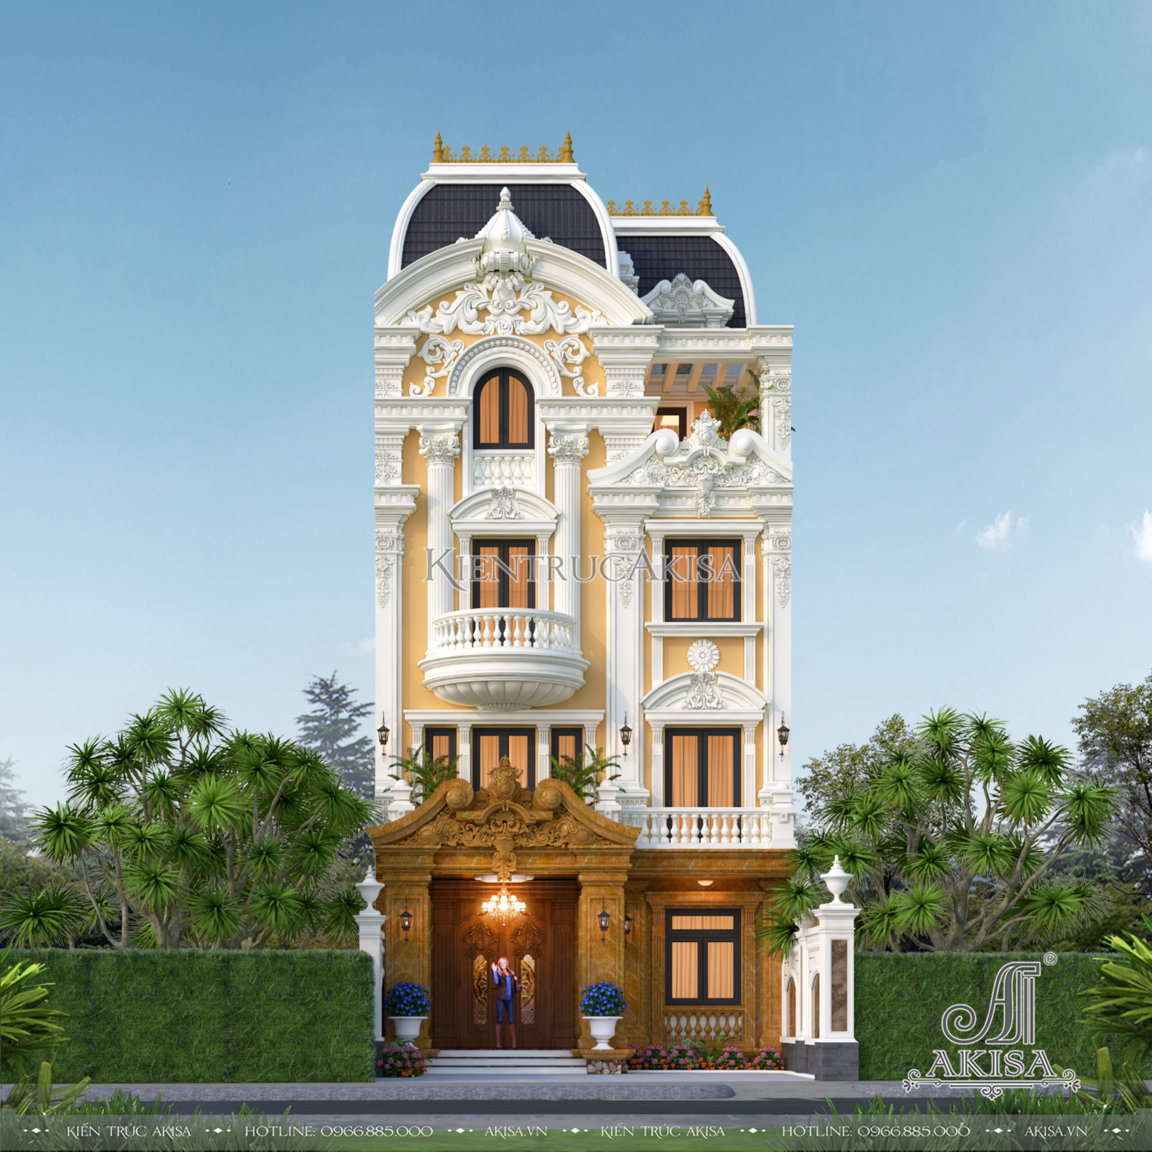 Sự kết hợp với màu vàng hoàng gia khiến thiết kế biệt thự Pháp tại Hà Nội thêm hoành tráng và ấn tượng